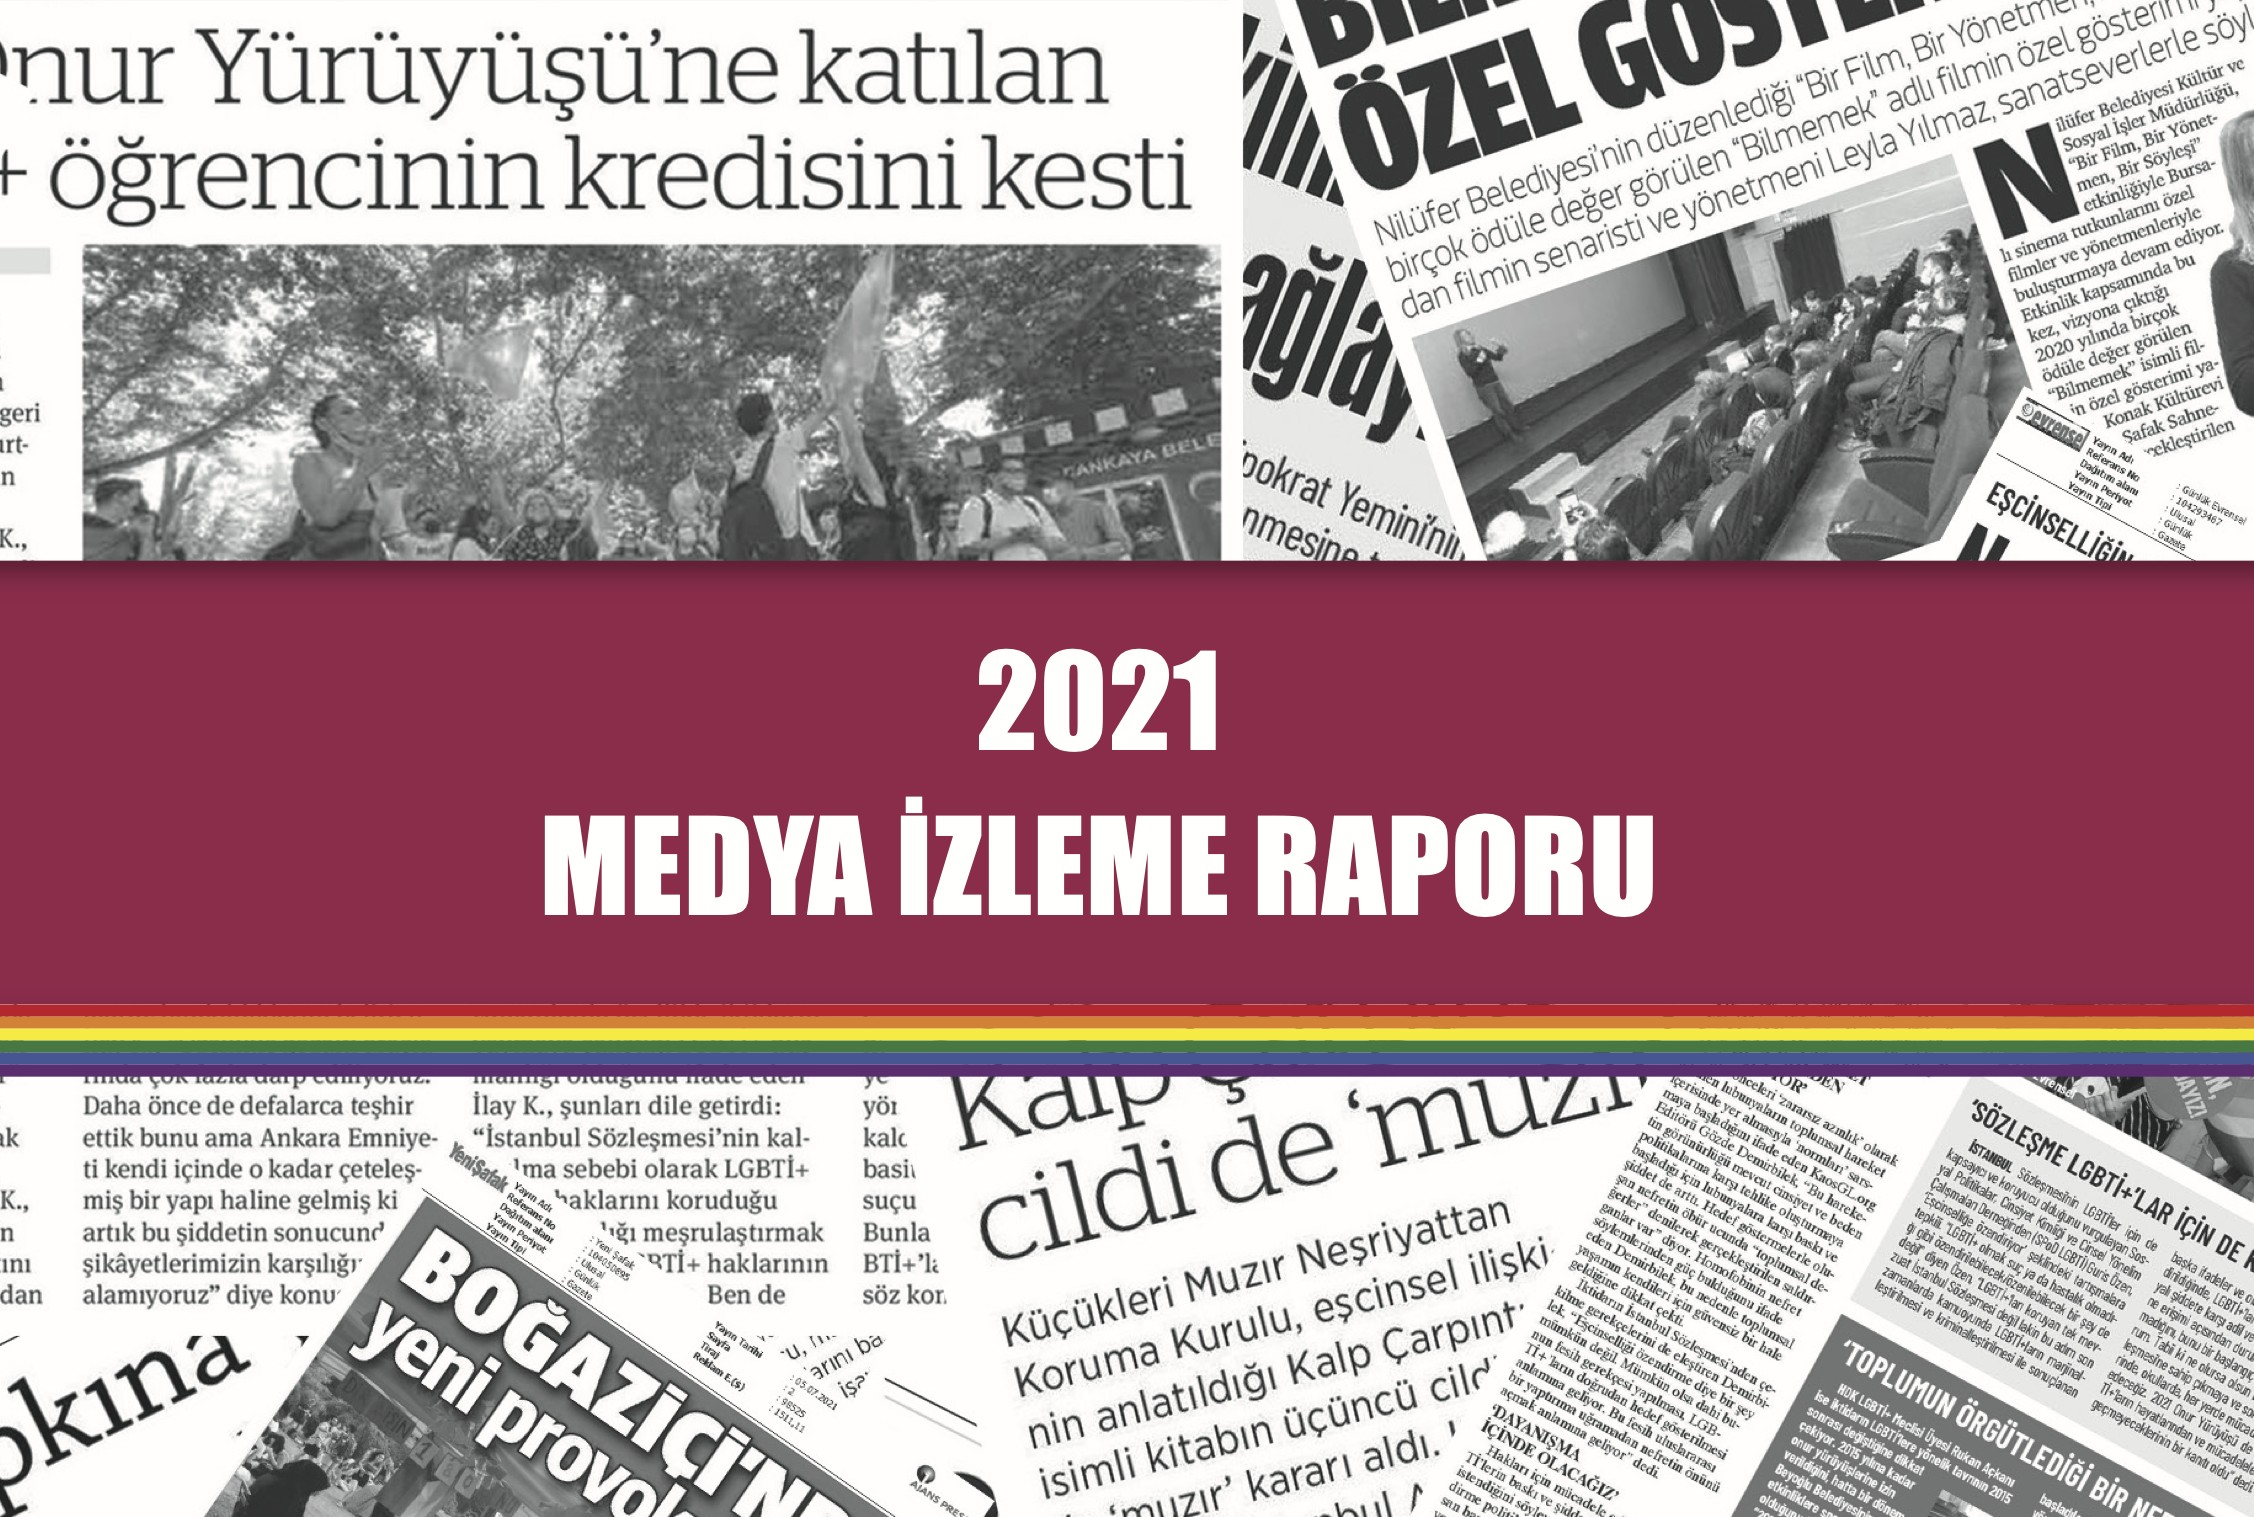 2021-de-lgbti-lar-gazetelerin-en-cok-gundem-sayfalarinda-yer-aldi-1